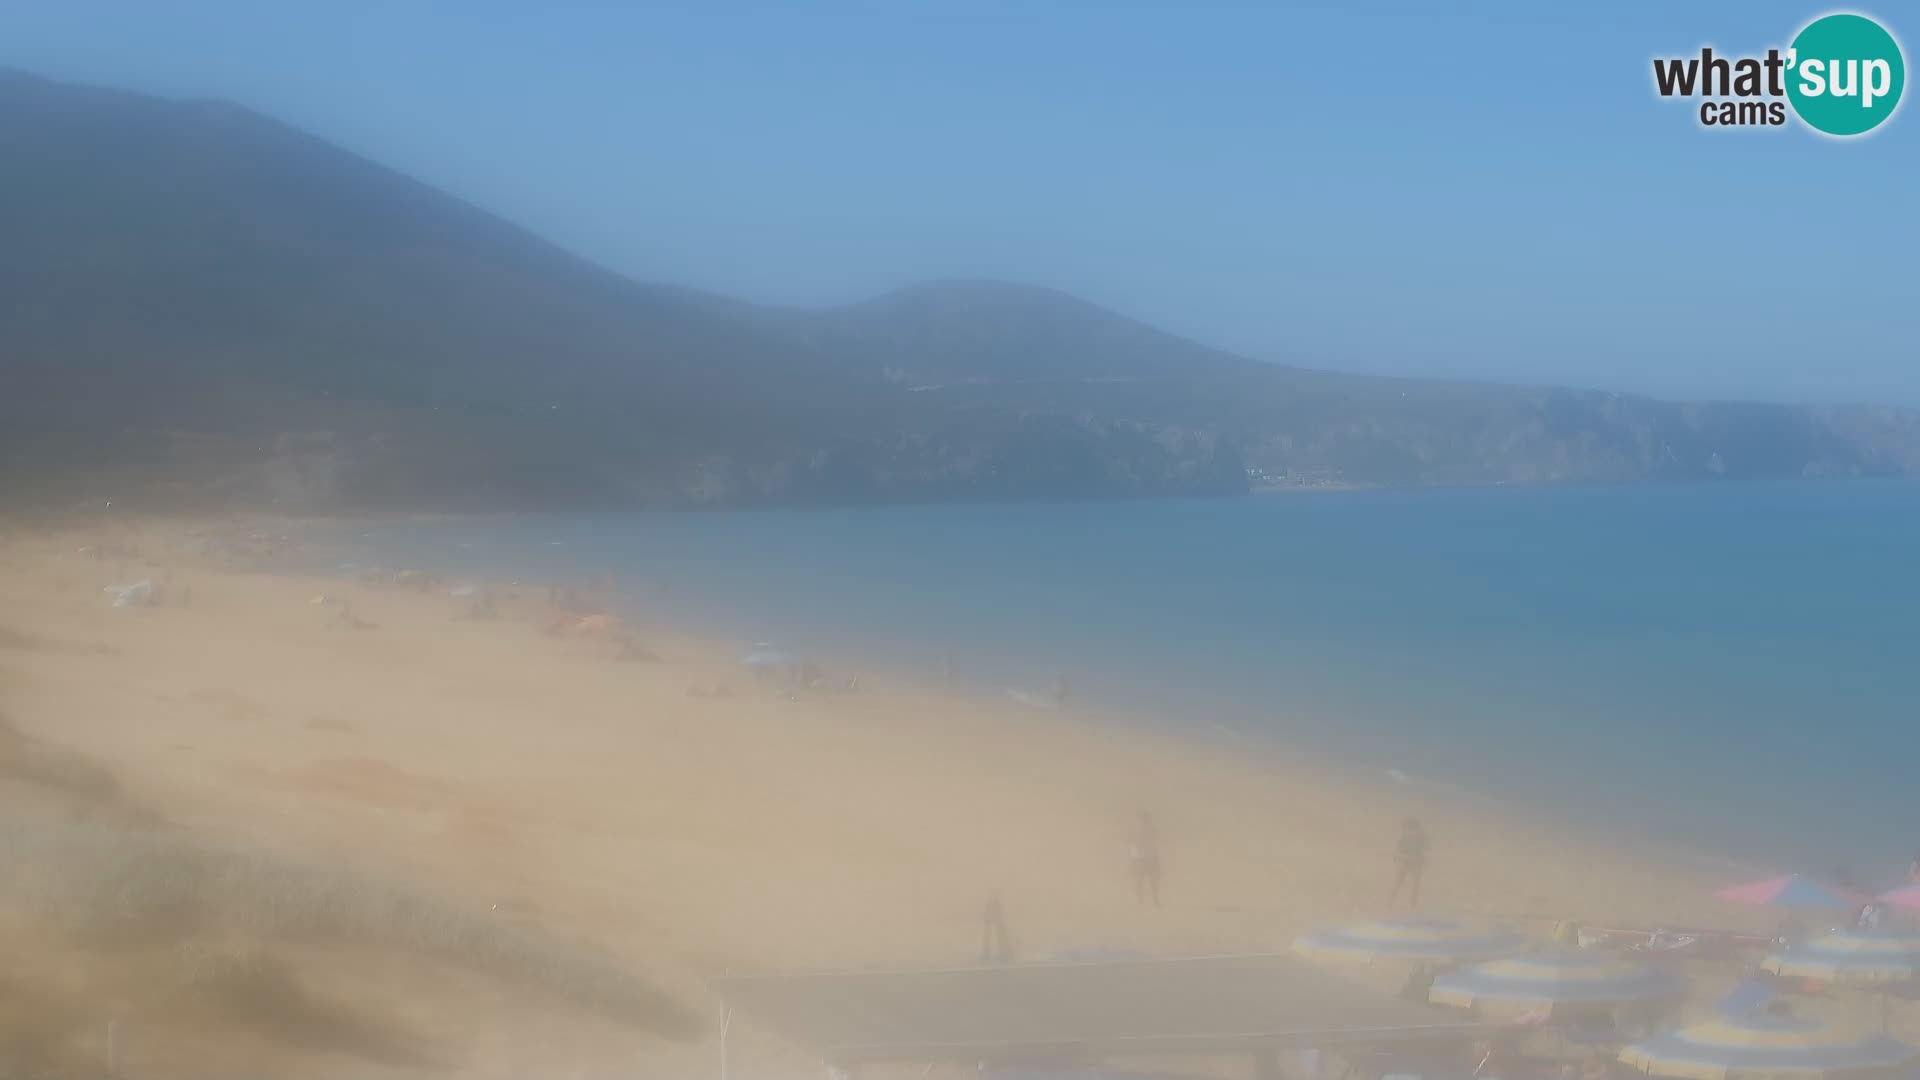 Spletna kamera plaže San Nicolò v Buggerruju, Sardinija – uživajte v valovih in sončnih zahodih